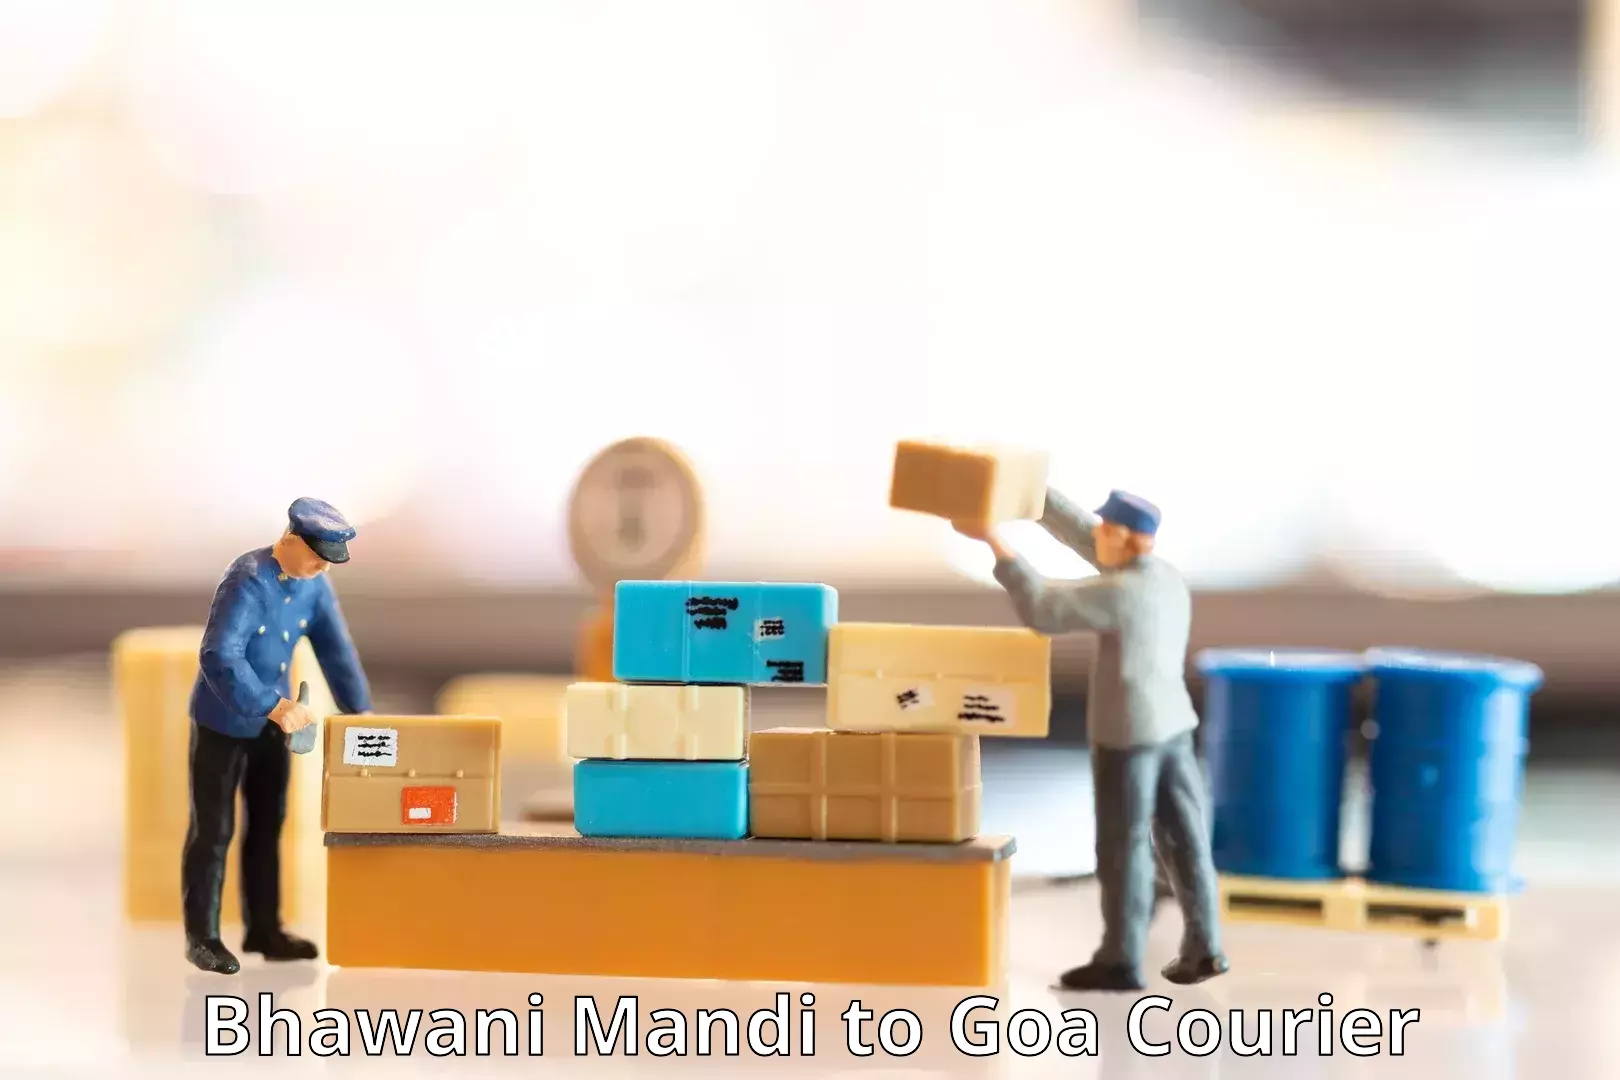 Next-day delivery options Bhawani Mandi to Goa